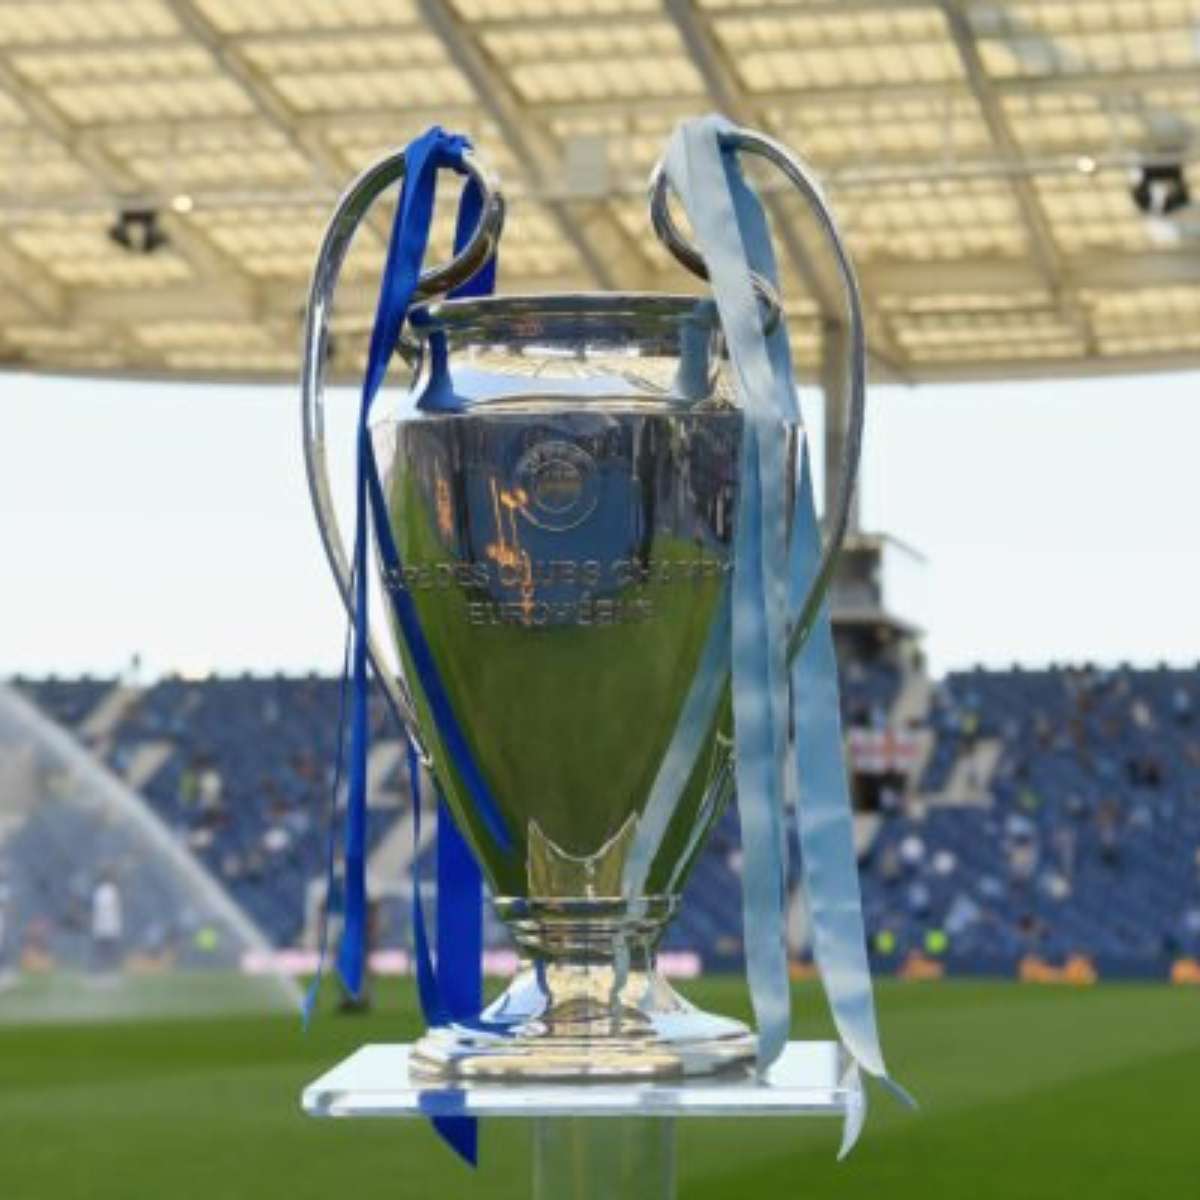 UEFA Champions League: jogos das oitavas de final